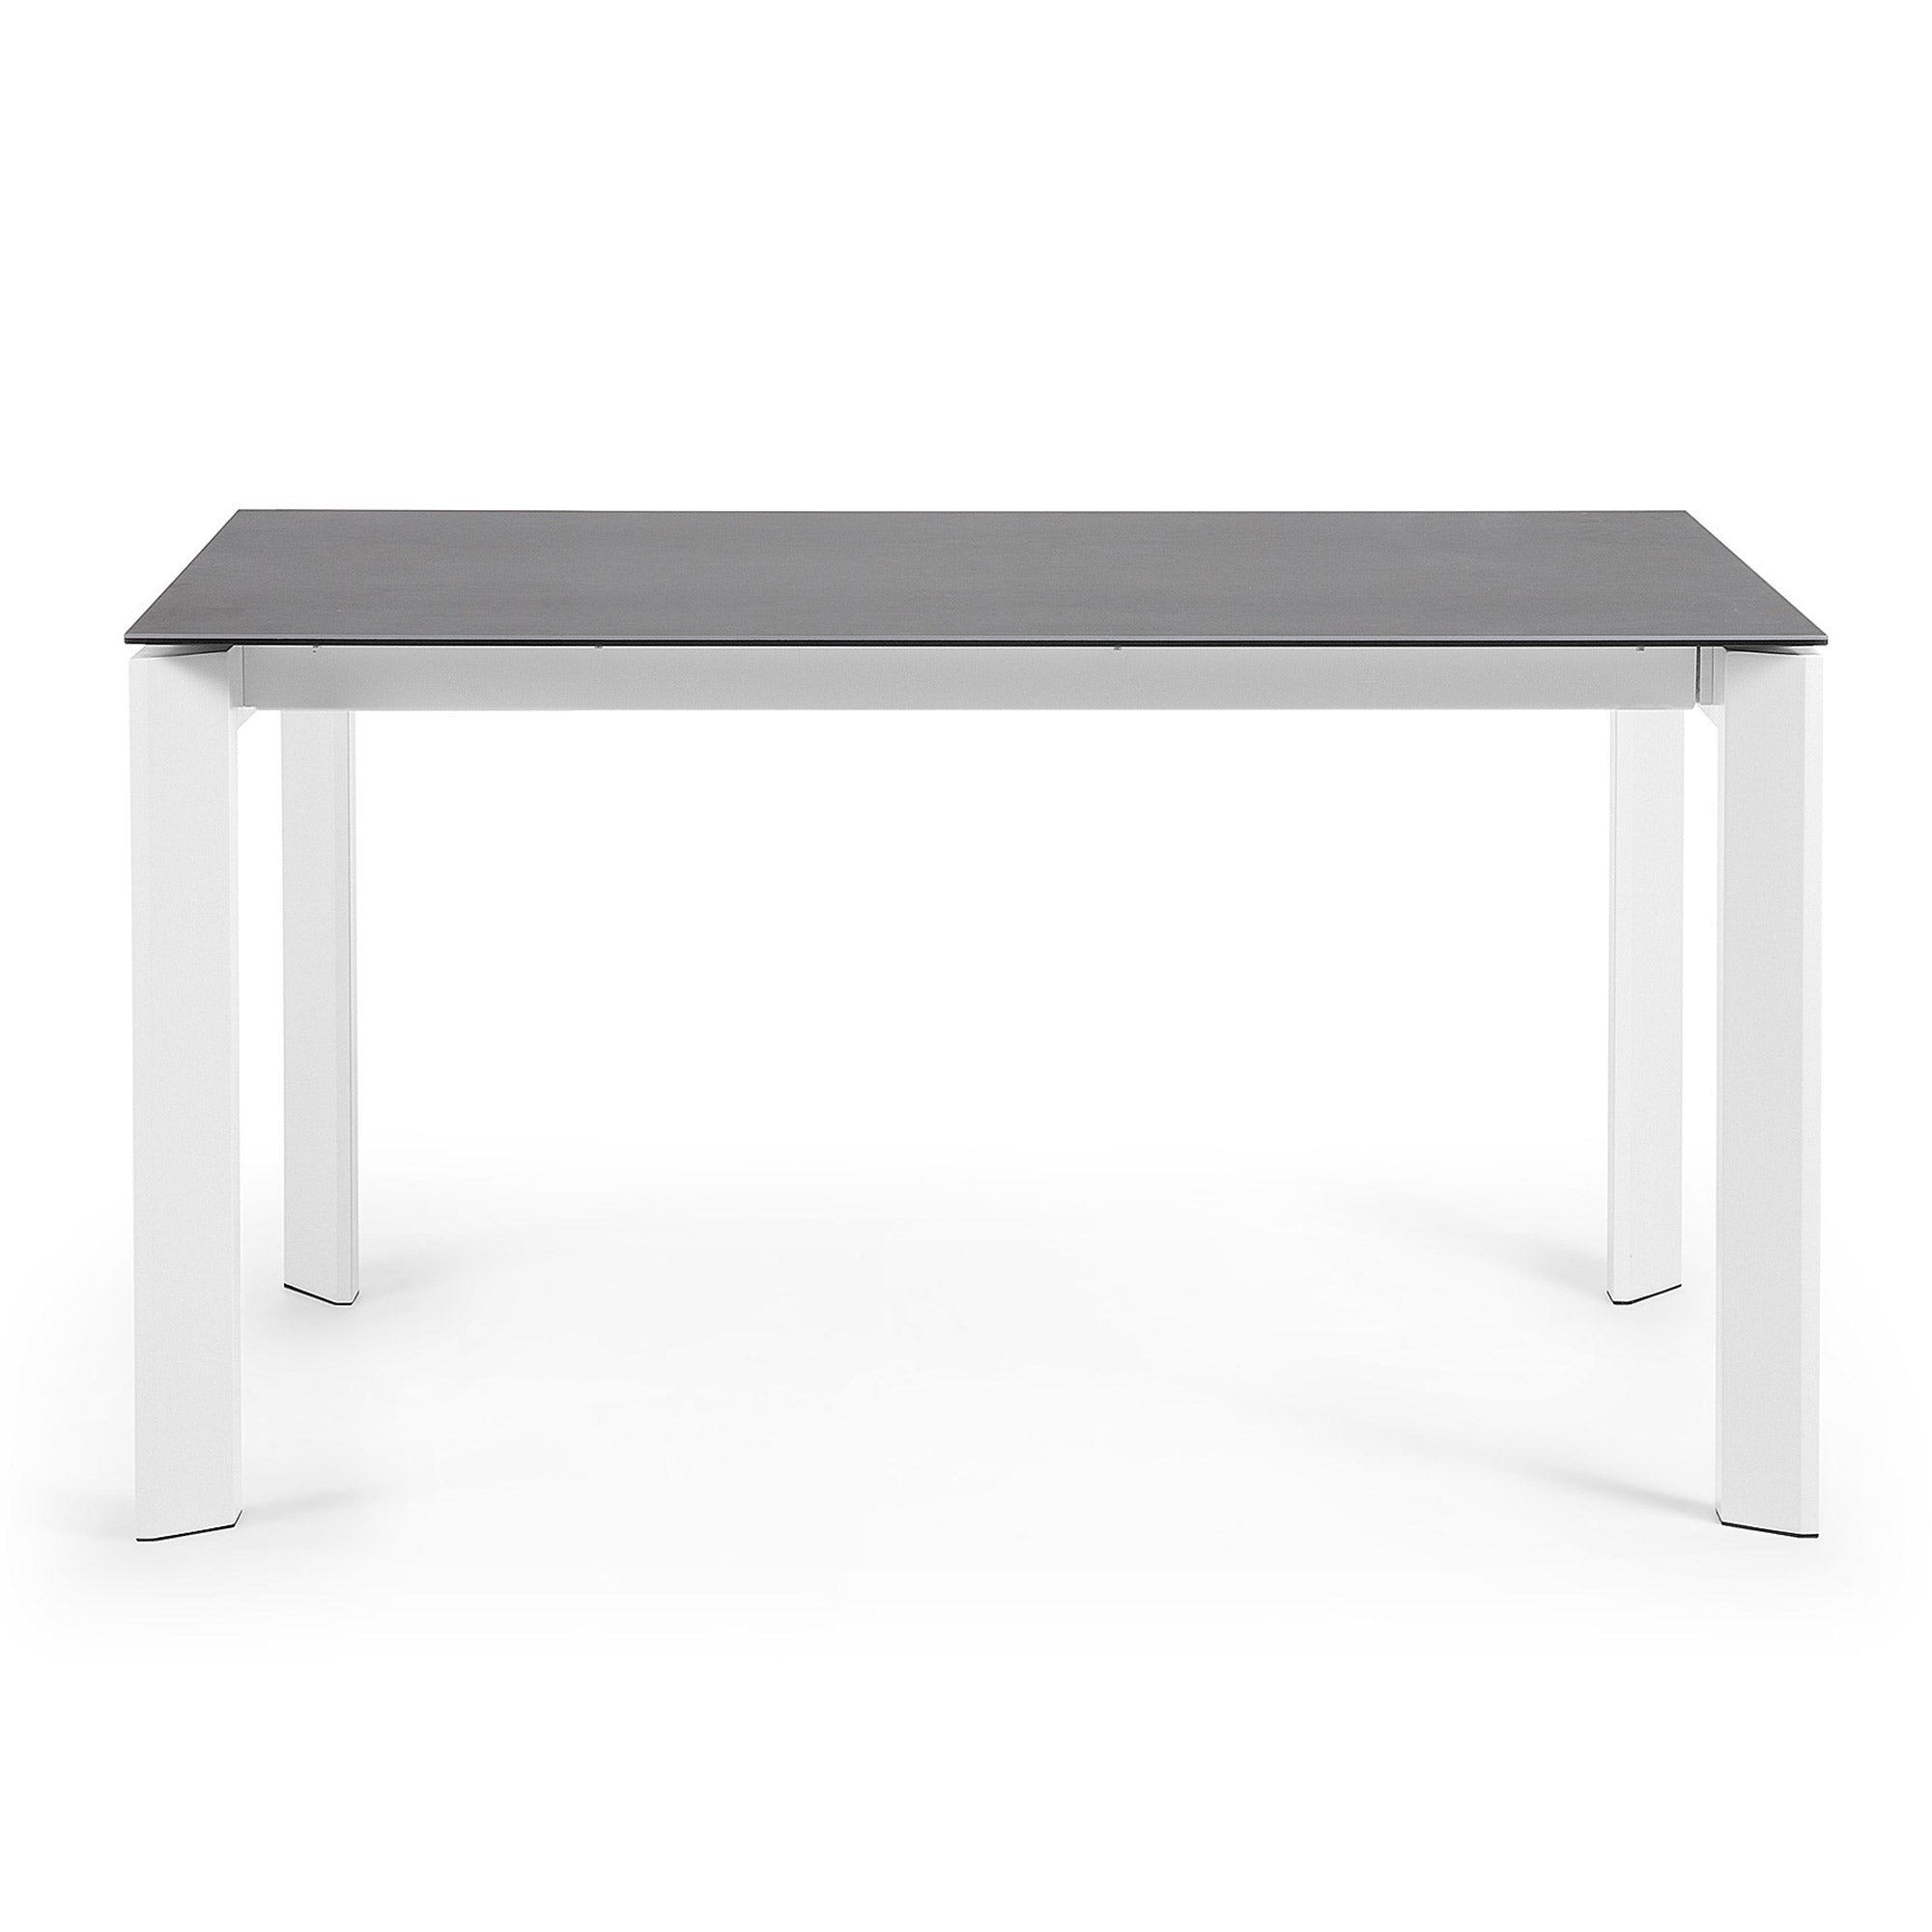 Axis porcelán kihúzható asztal Volcano Rock kivitelben, fehér acéllábakkal 140 (200) cm